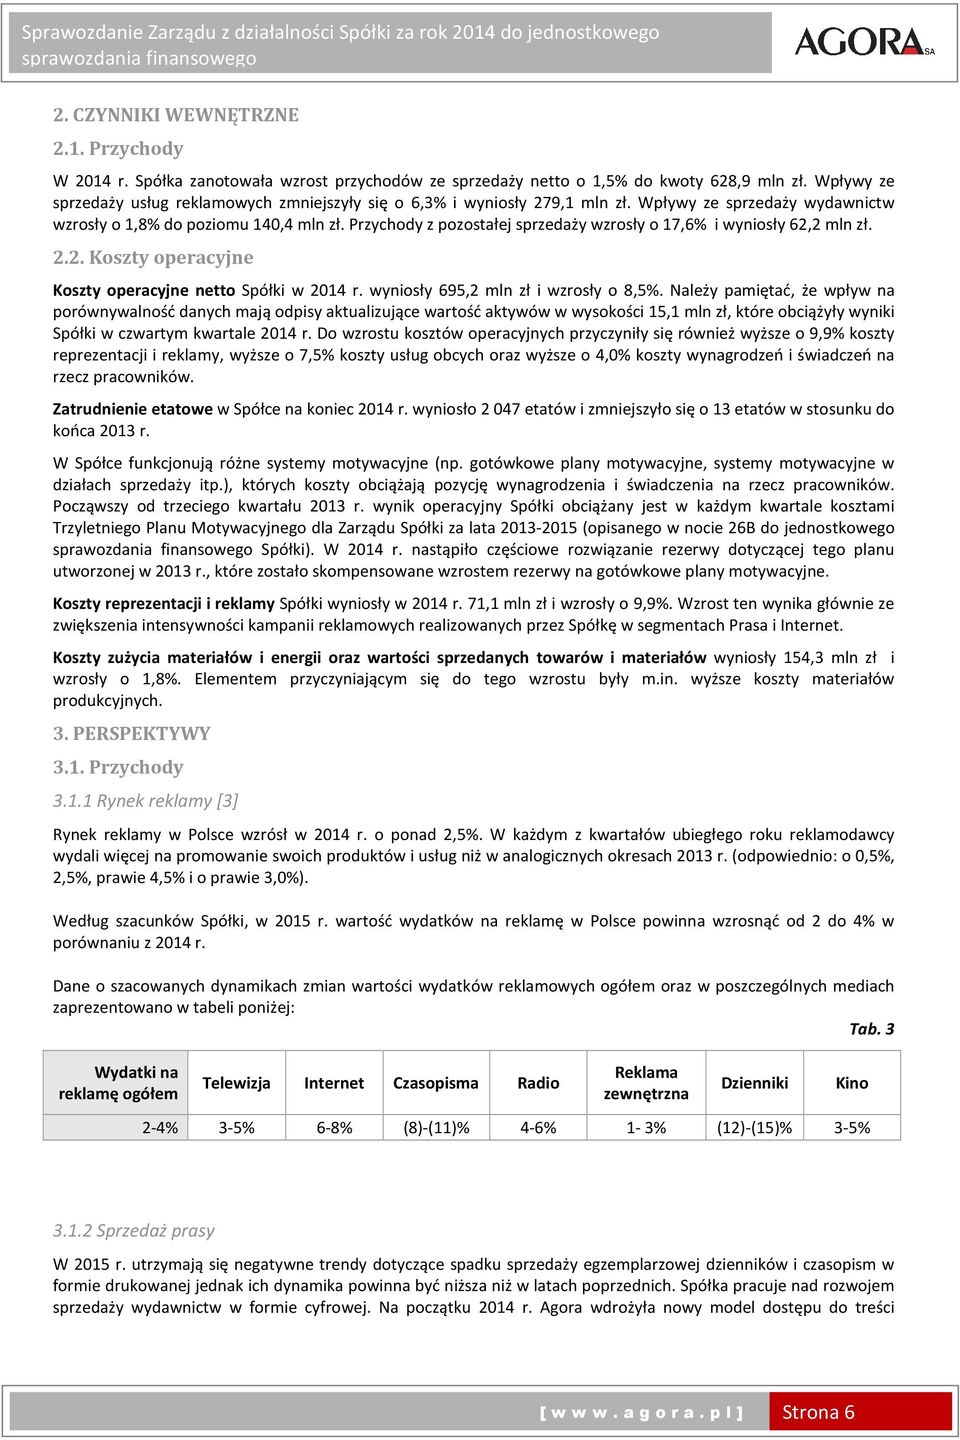 Przychody z pozostałej sprzedaży wzrosły o 17,6% i wyniosły 62,2 mln zł. 2.2. Koszty operacyjne Koszty operacyjne netto Spółki w 2014 r. wyniosły 695,2 mln zł i wzrosły o 8,5%.